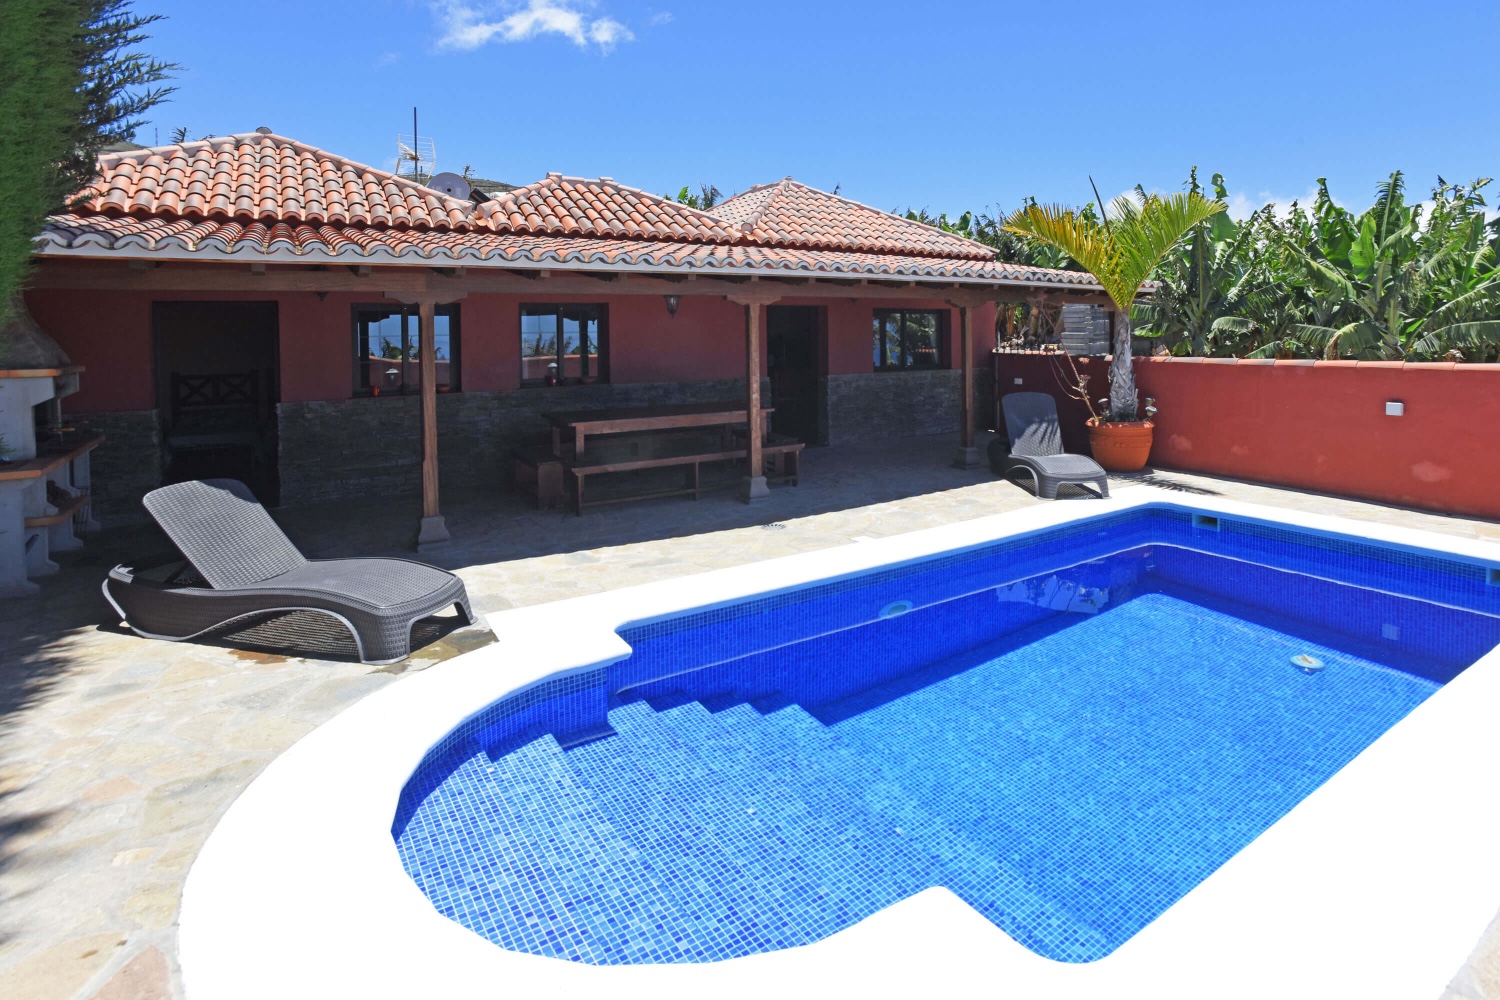 Bonita casa rural para 4 personas con piscina privada de acceso fácil ubicada en una zona rural con vistas al mar y a las montañas 